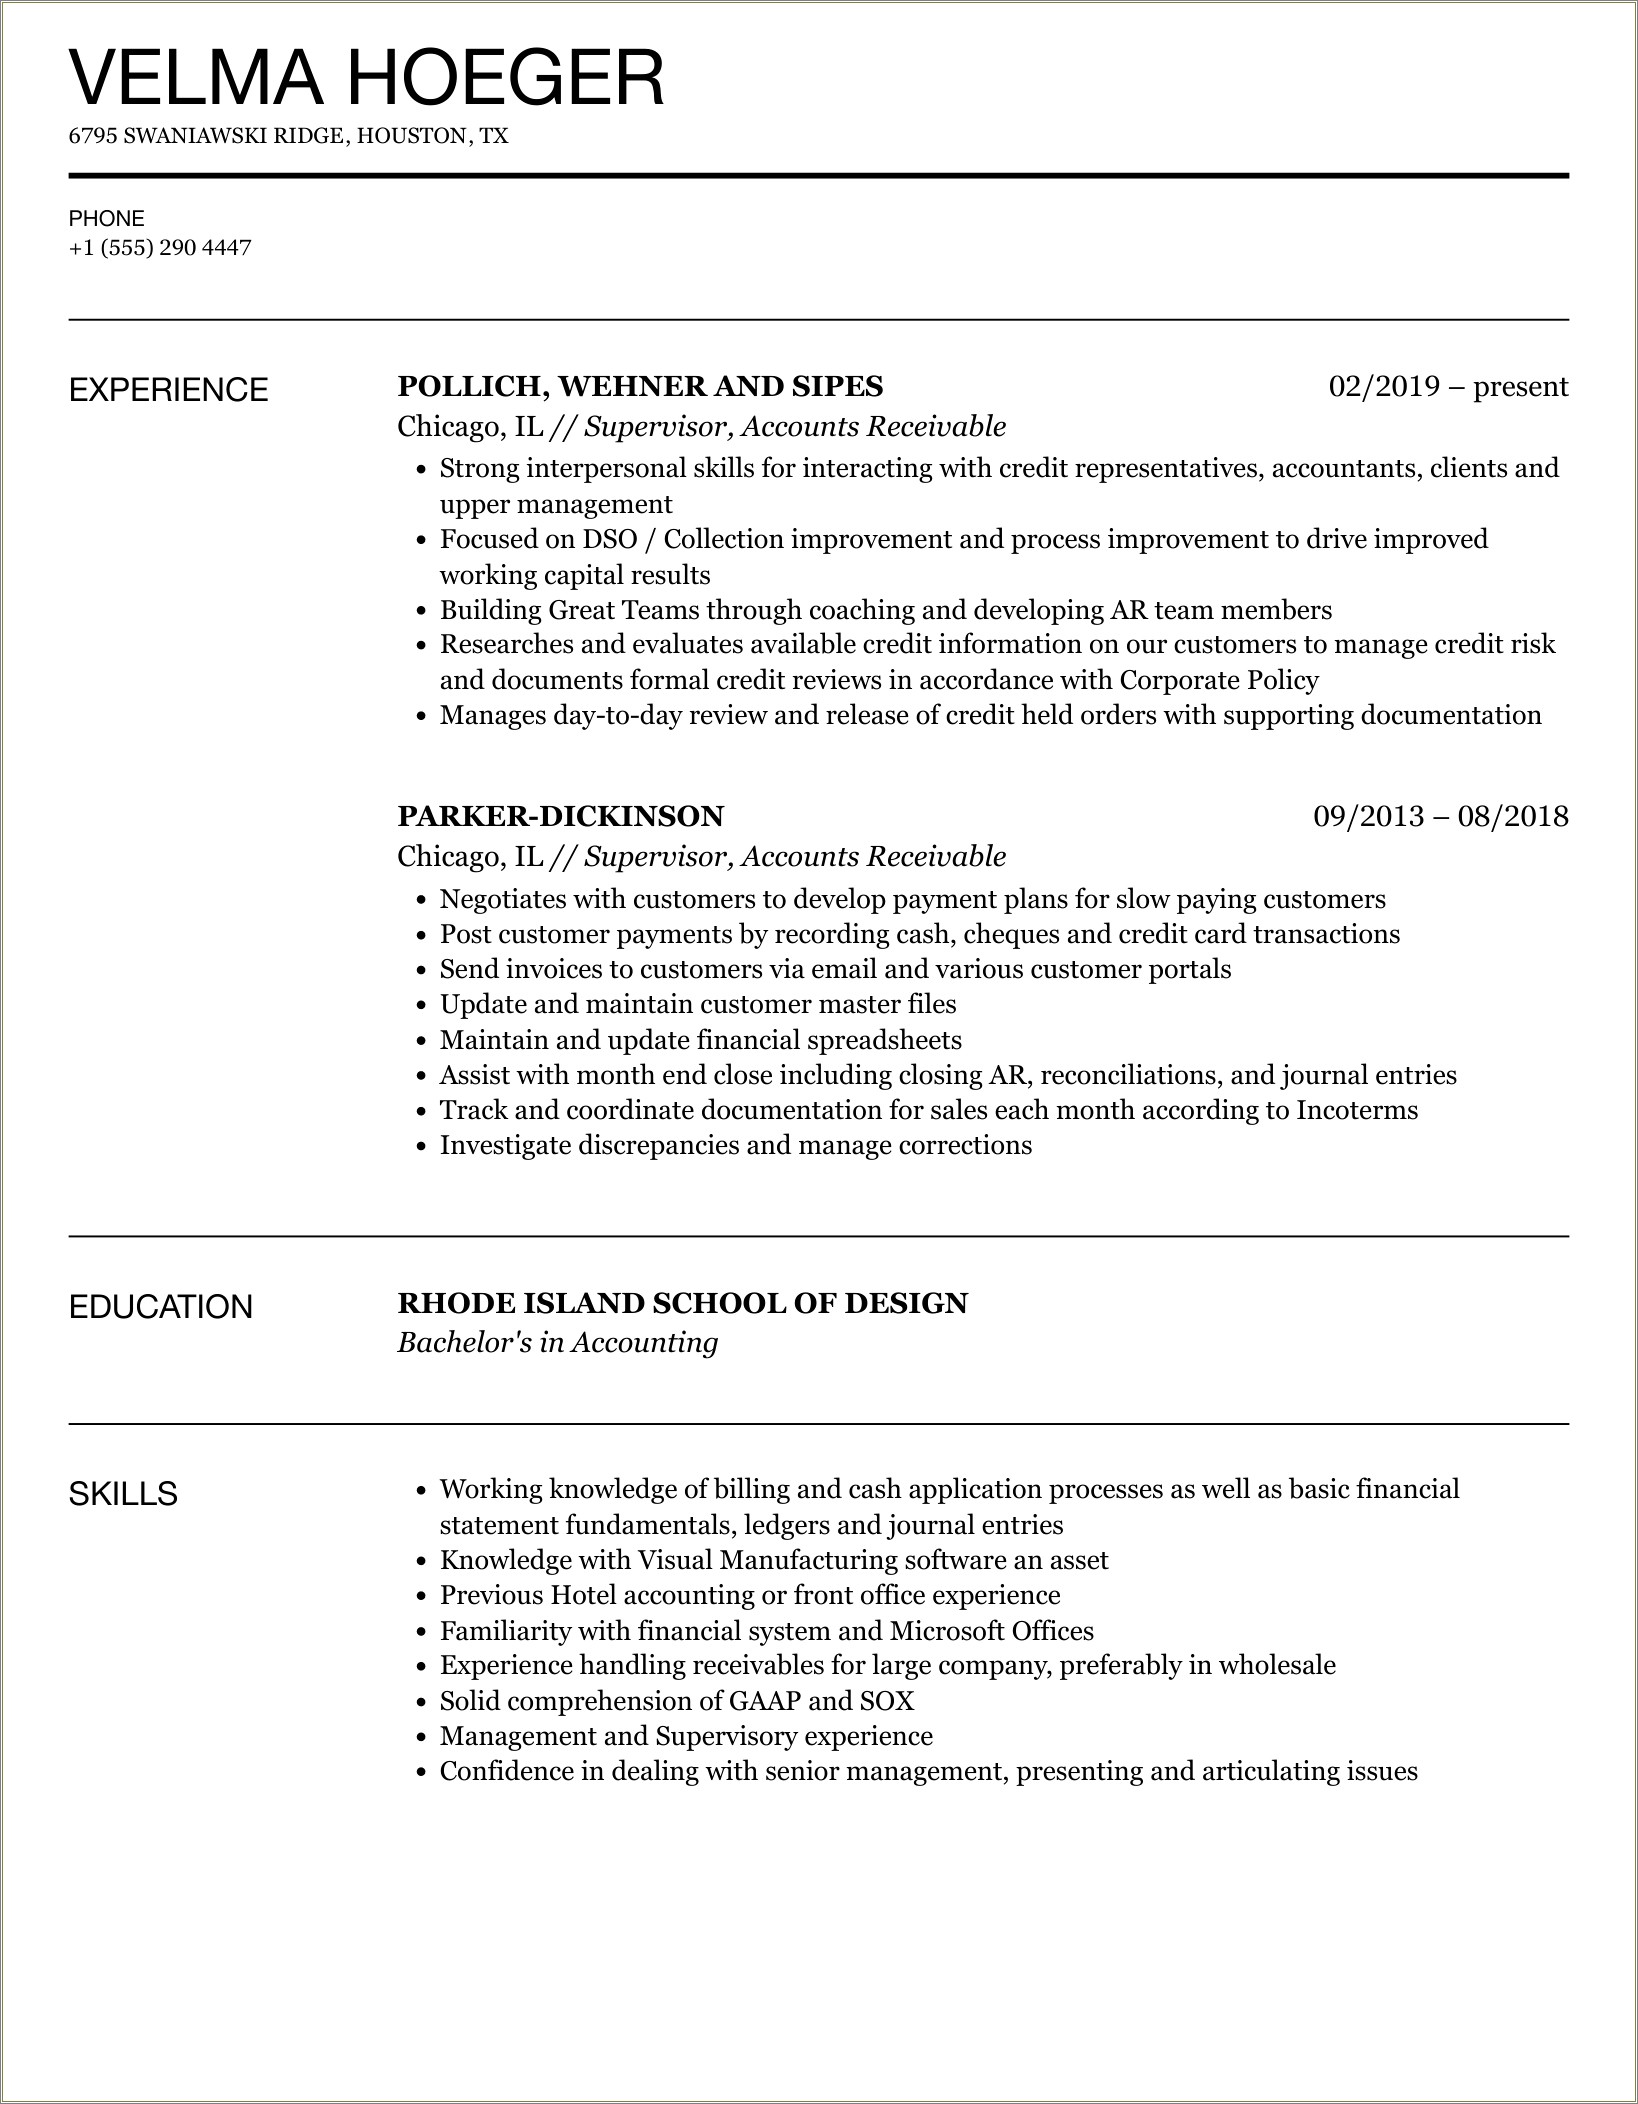 Resume Job Description For Accounts Receivable Assistant